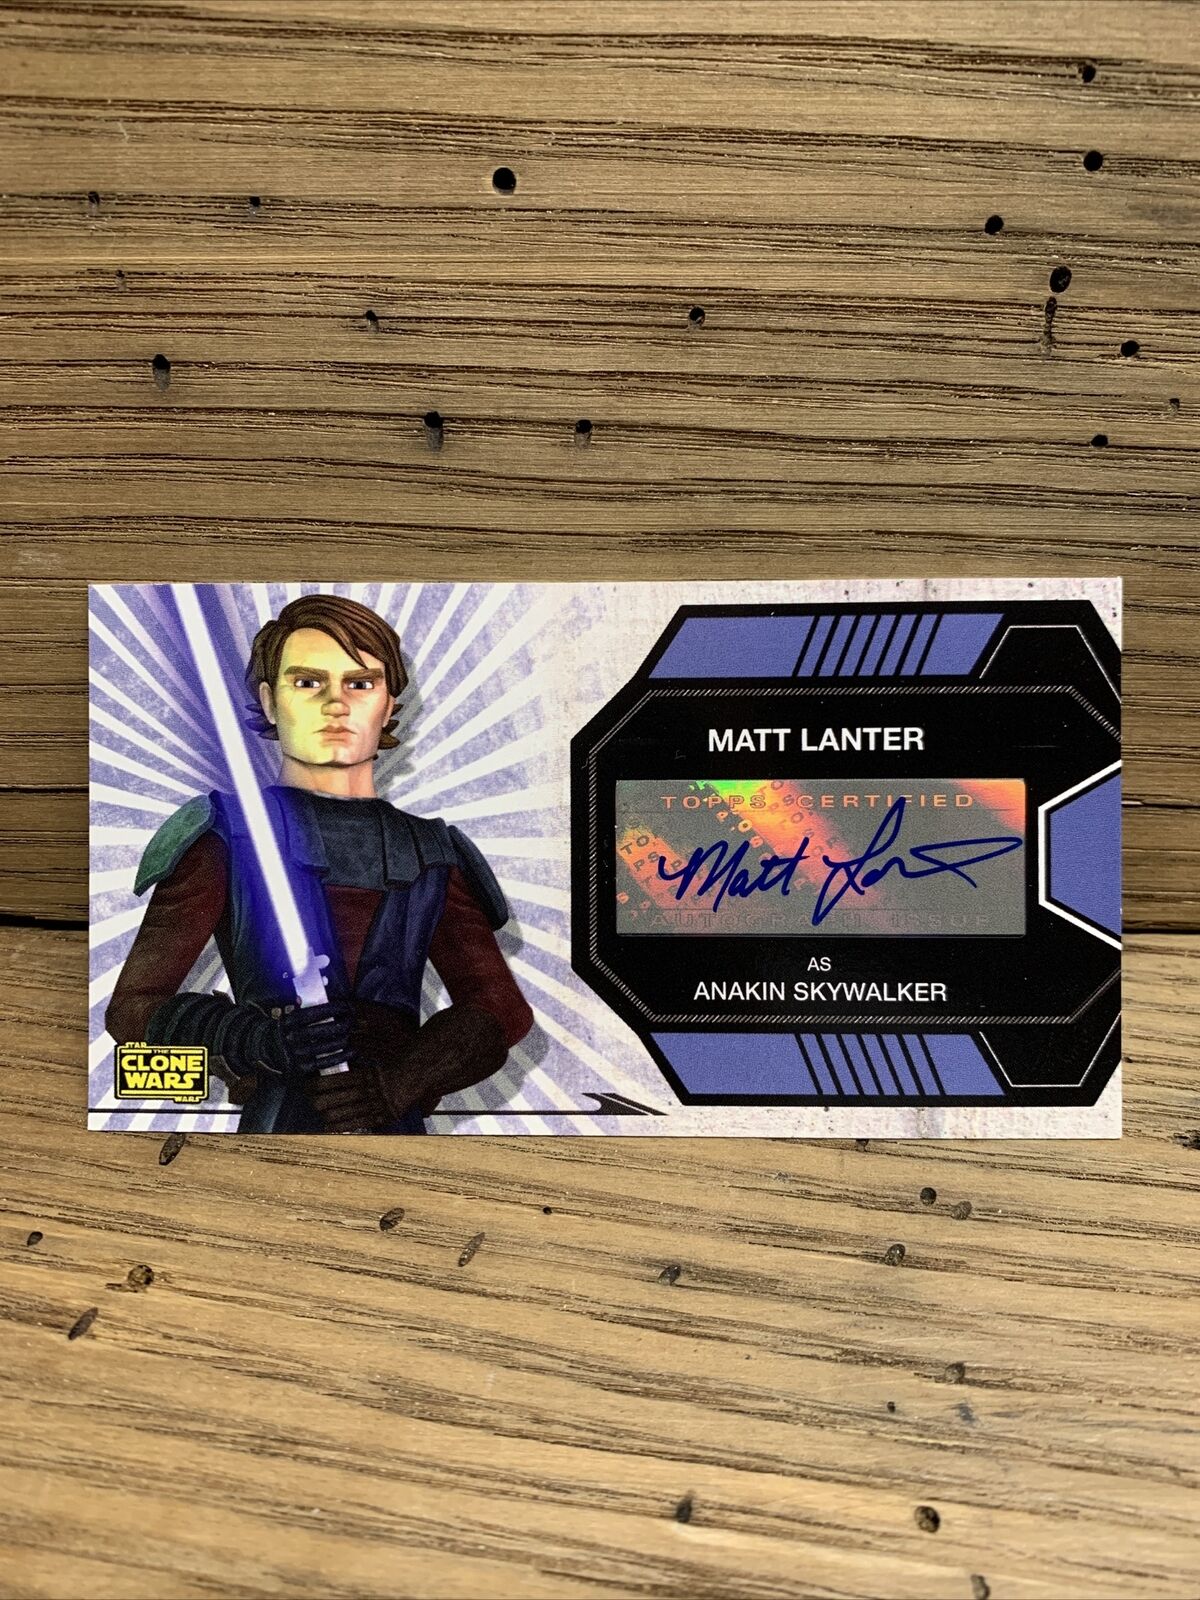 2009 Topps Star Wars Clone Wars Matt Lanter as Anakin Skywalker Autograph Fresh